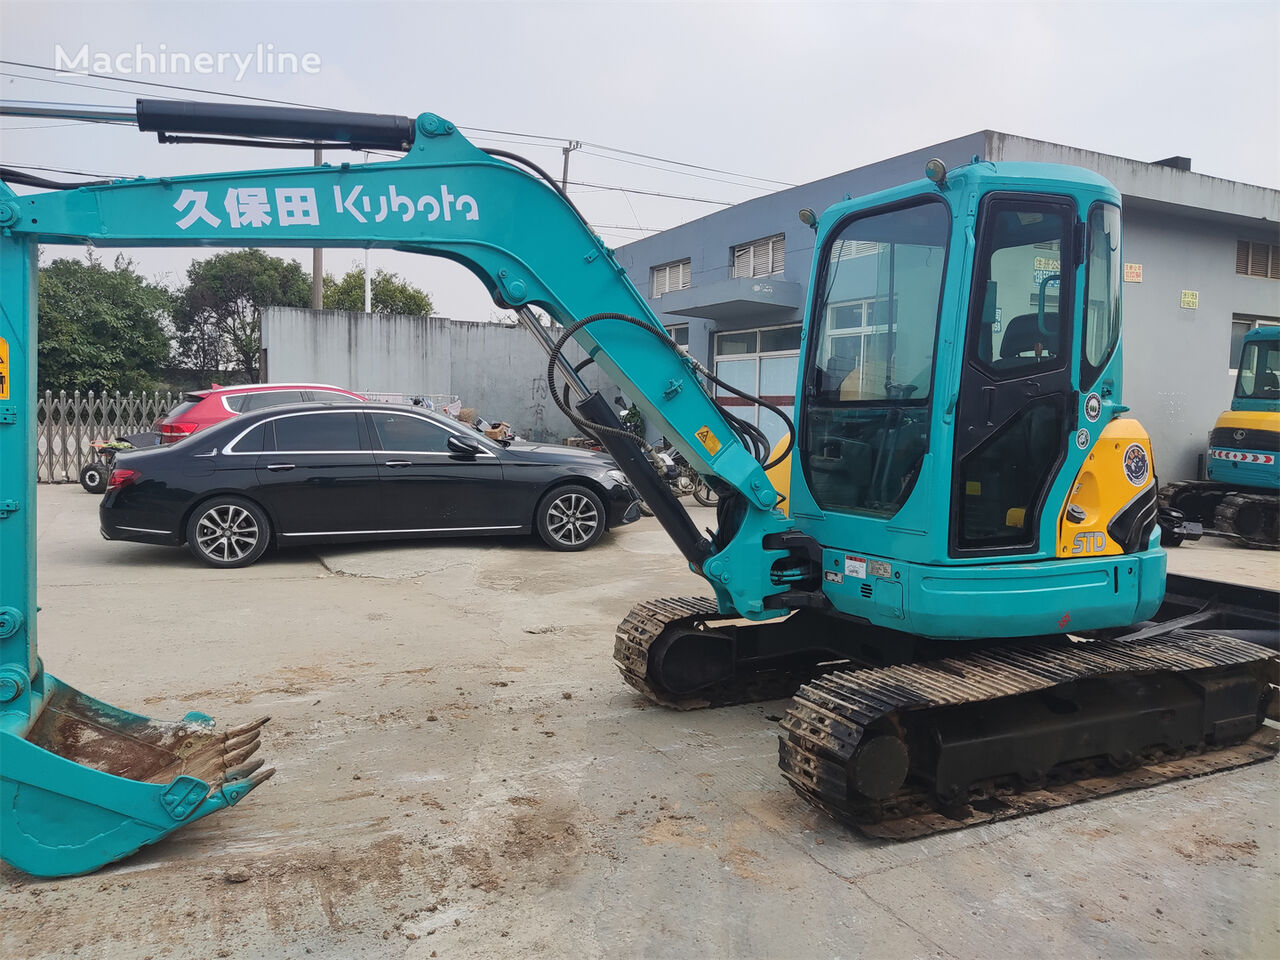 Kubota KX155-3 mini excavator